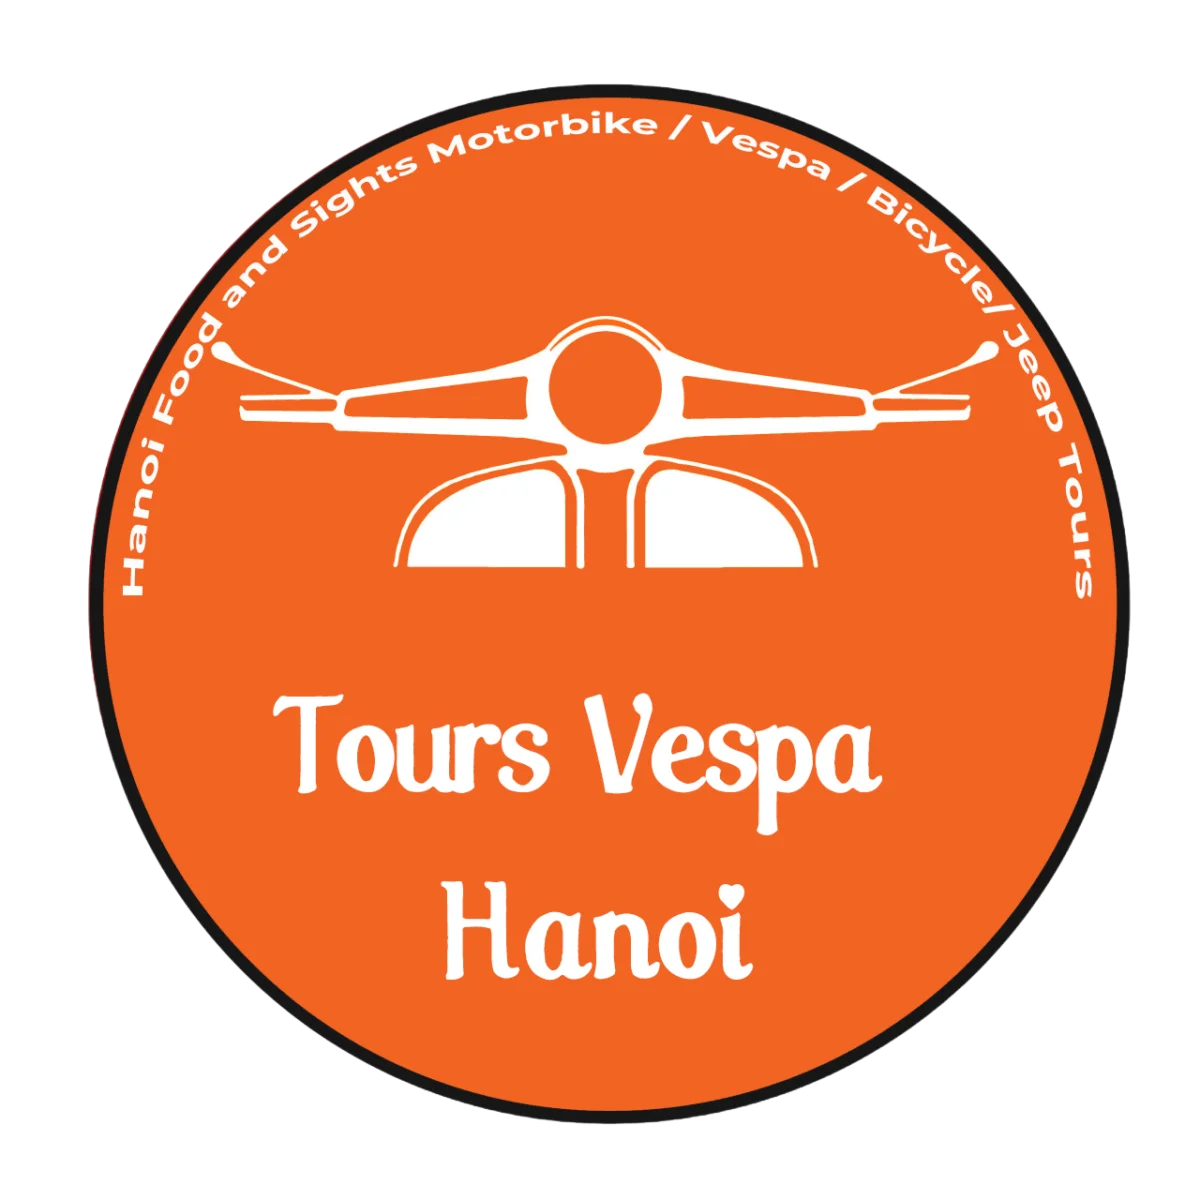 Tours Vespa Hanoi – Hanoi Vespa Tours